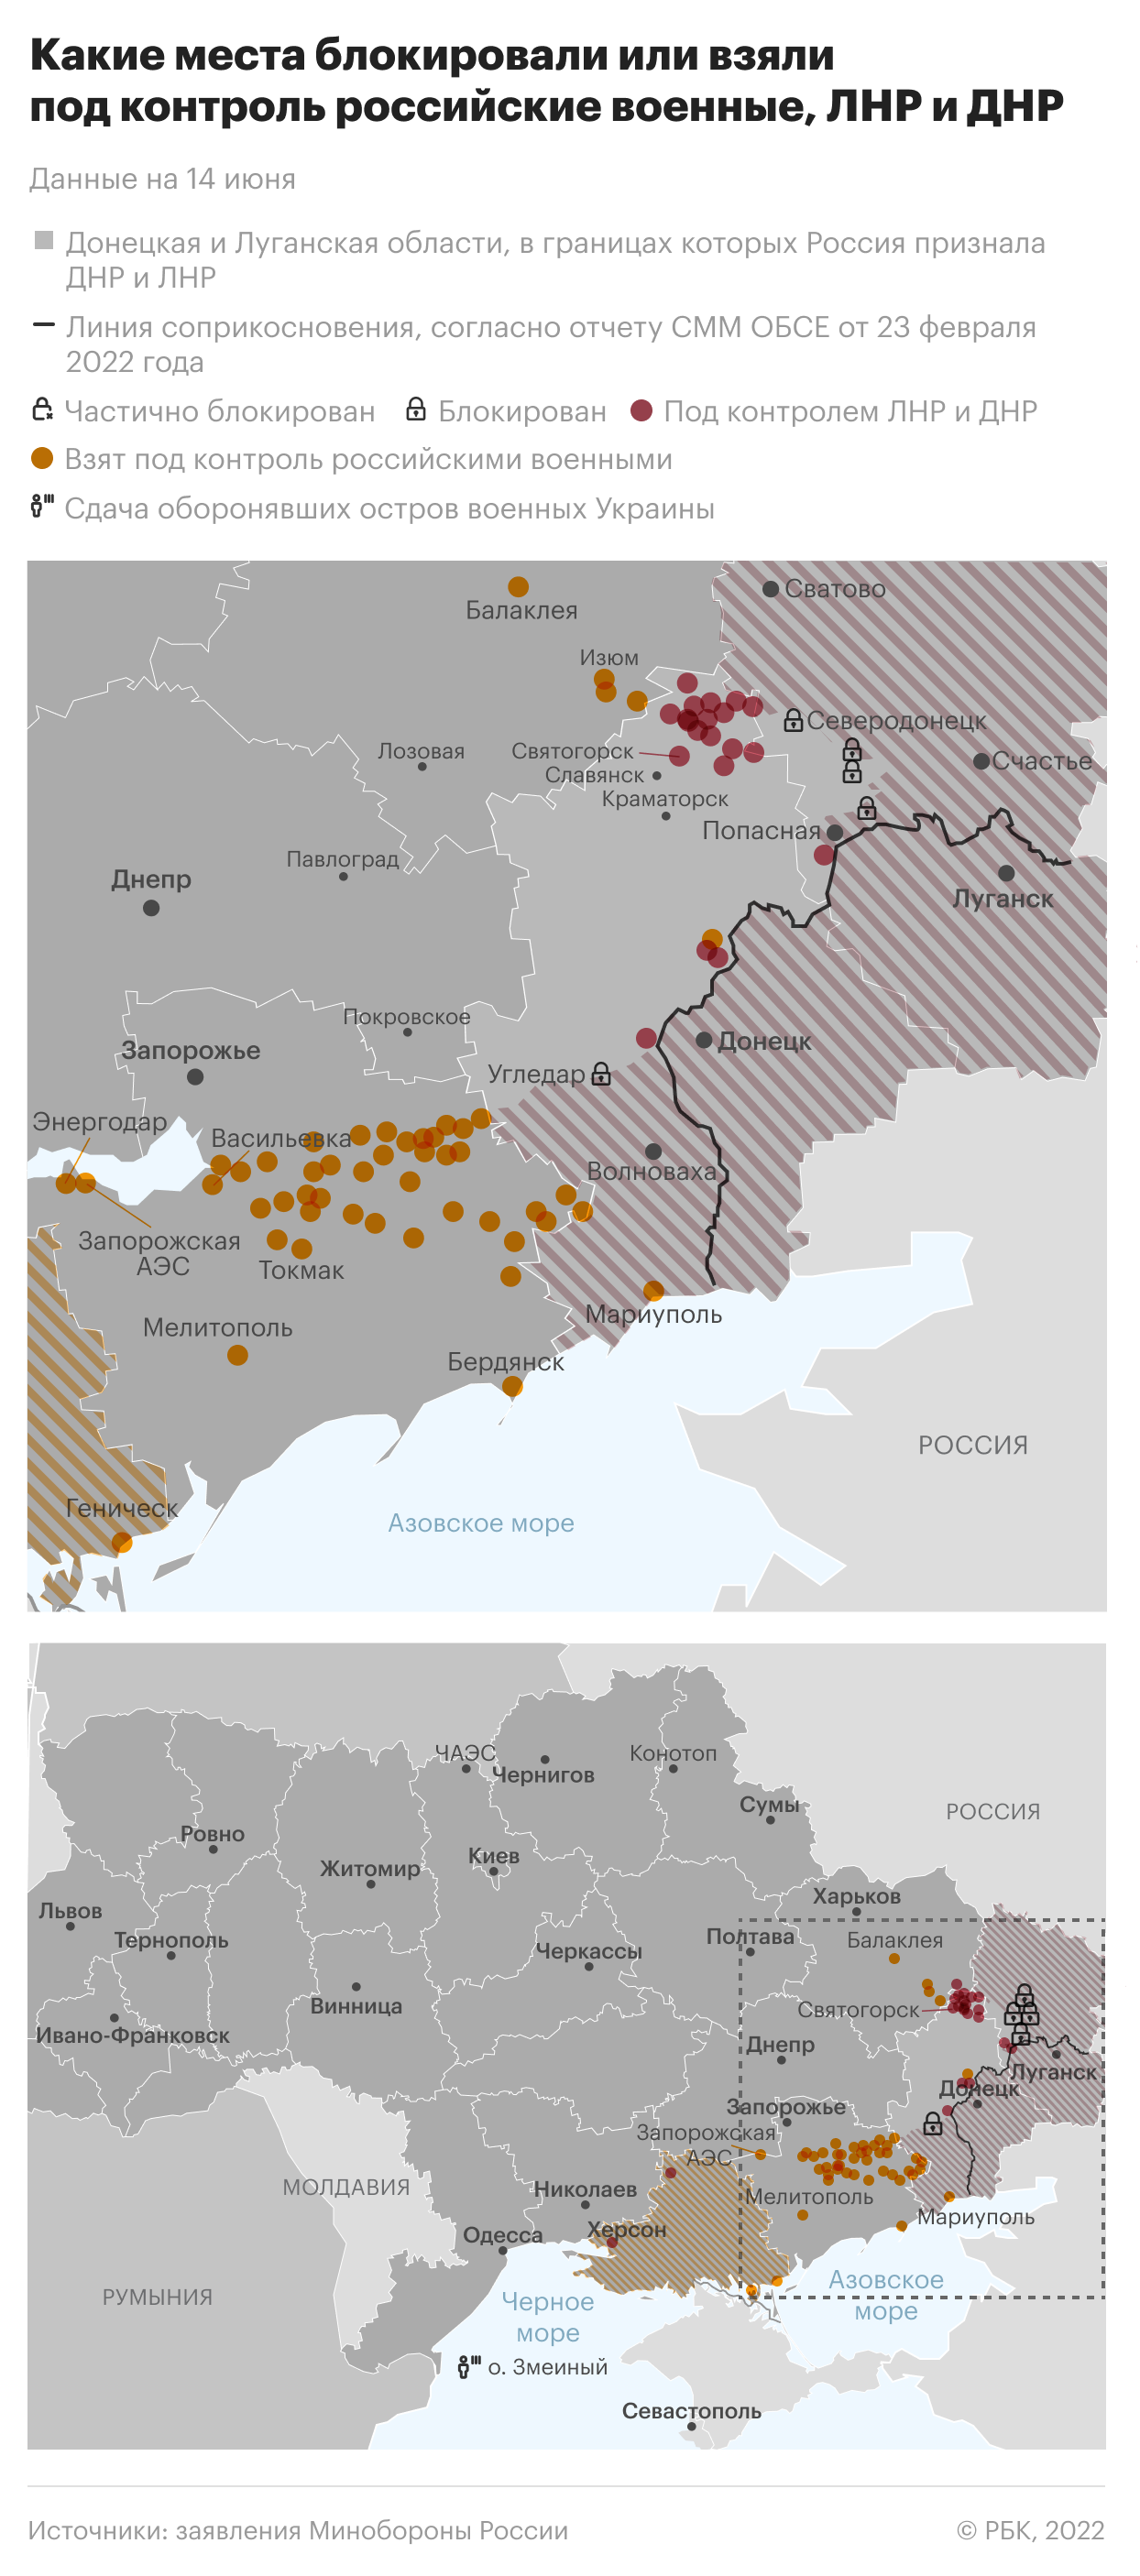 Блинкен заявил, что вопрос территориальных уступок должна решать Украина"/>













